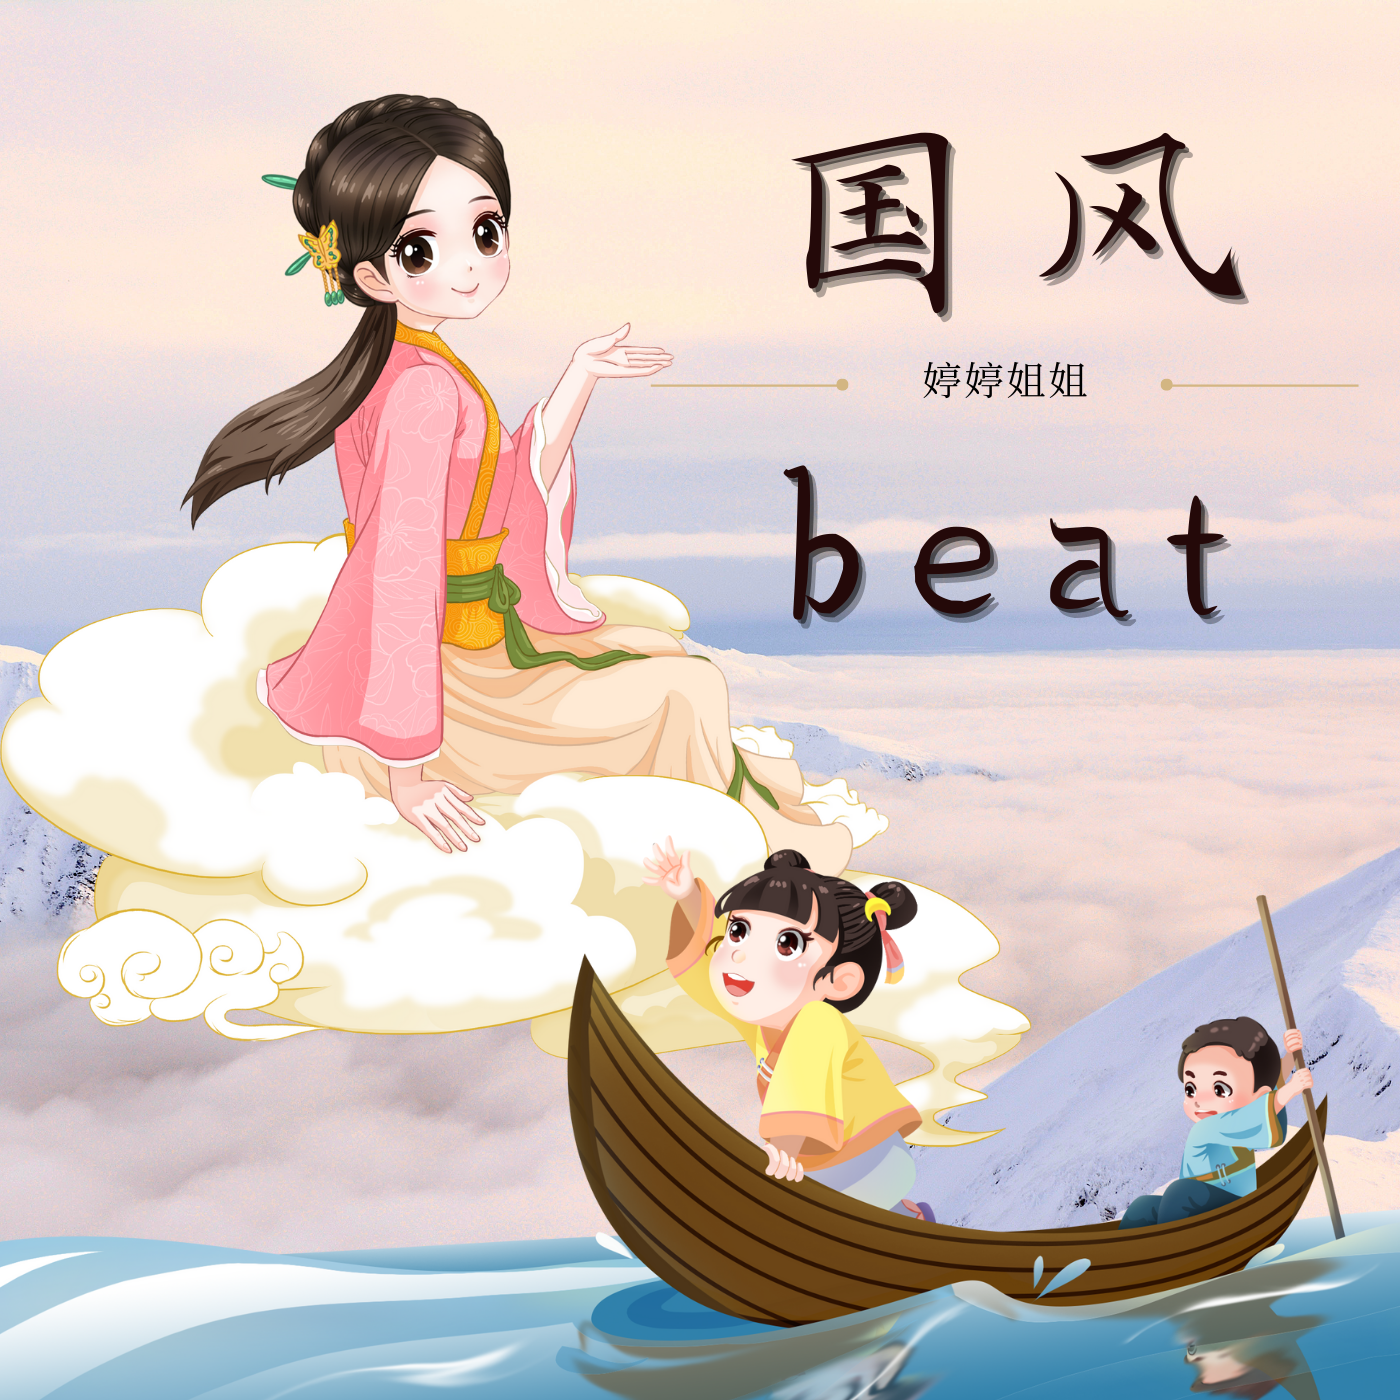 婷婷姐姐 - “诗经·蒹葭”-中国风/Chinese type beat-BPM152